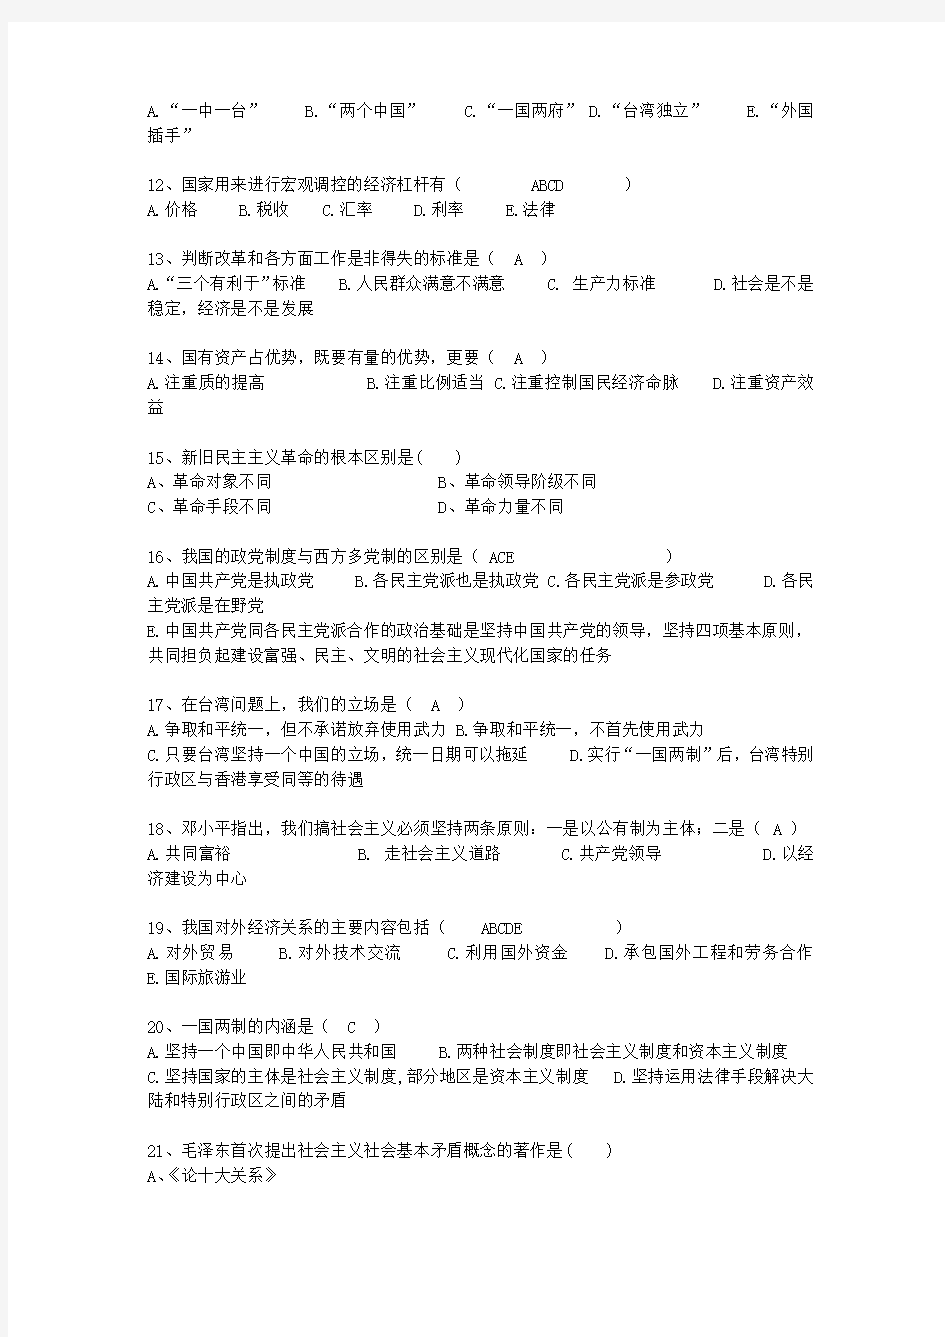 2015广东省毛概考试重点新总结A最新考试试题库(完整版)